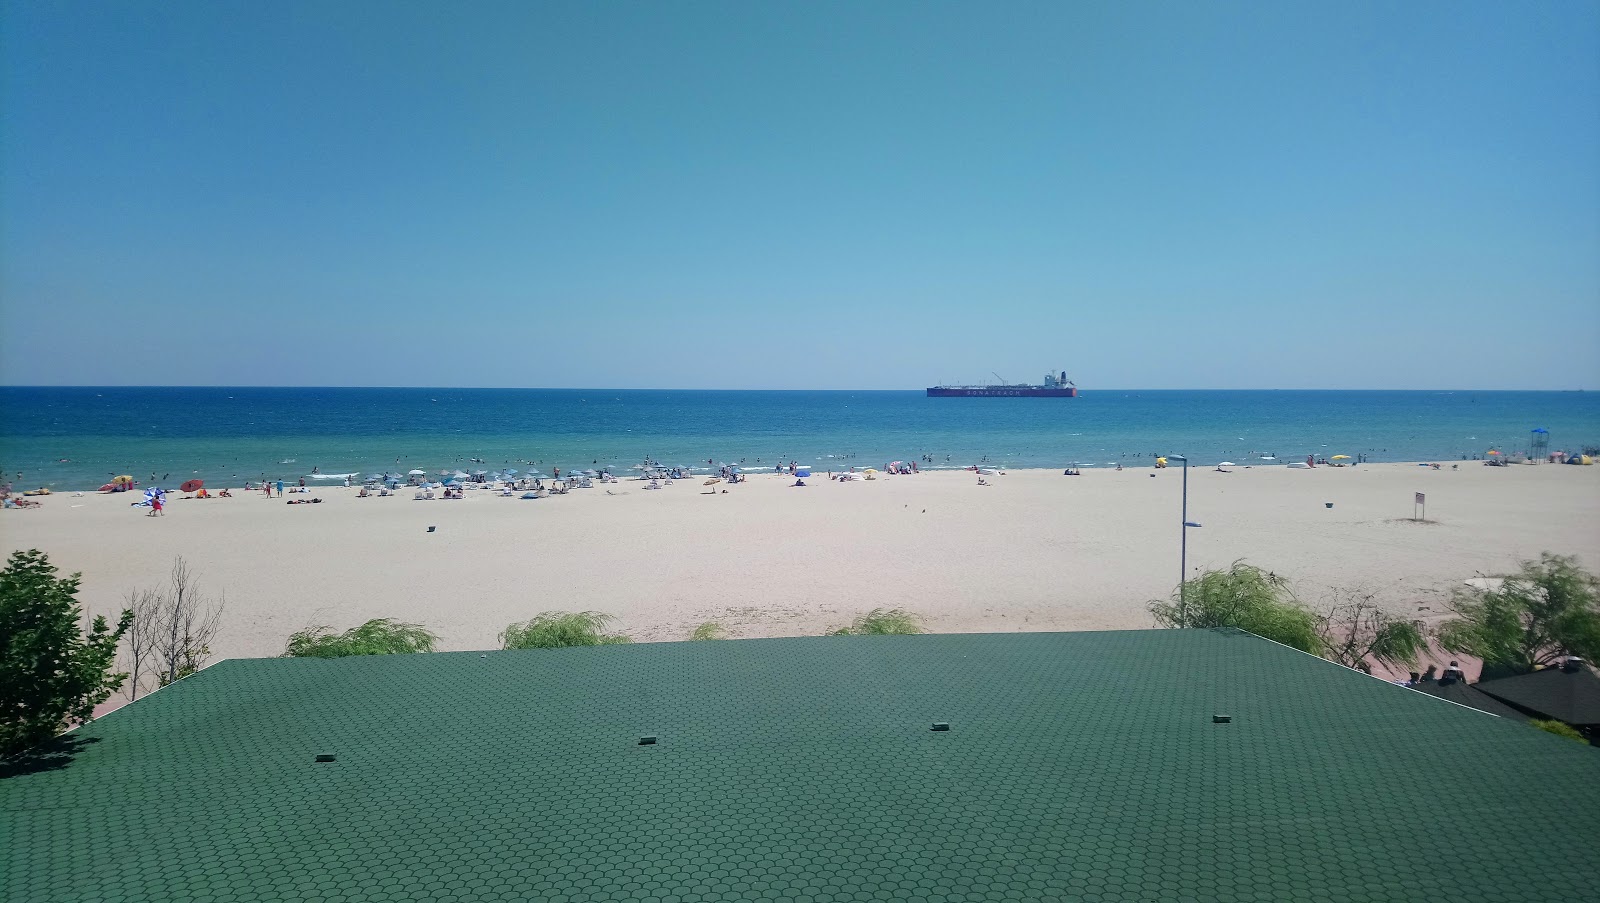 Photo de Sultankoy beach - endroit populaire parmi les connaisseurs de la détente